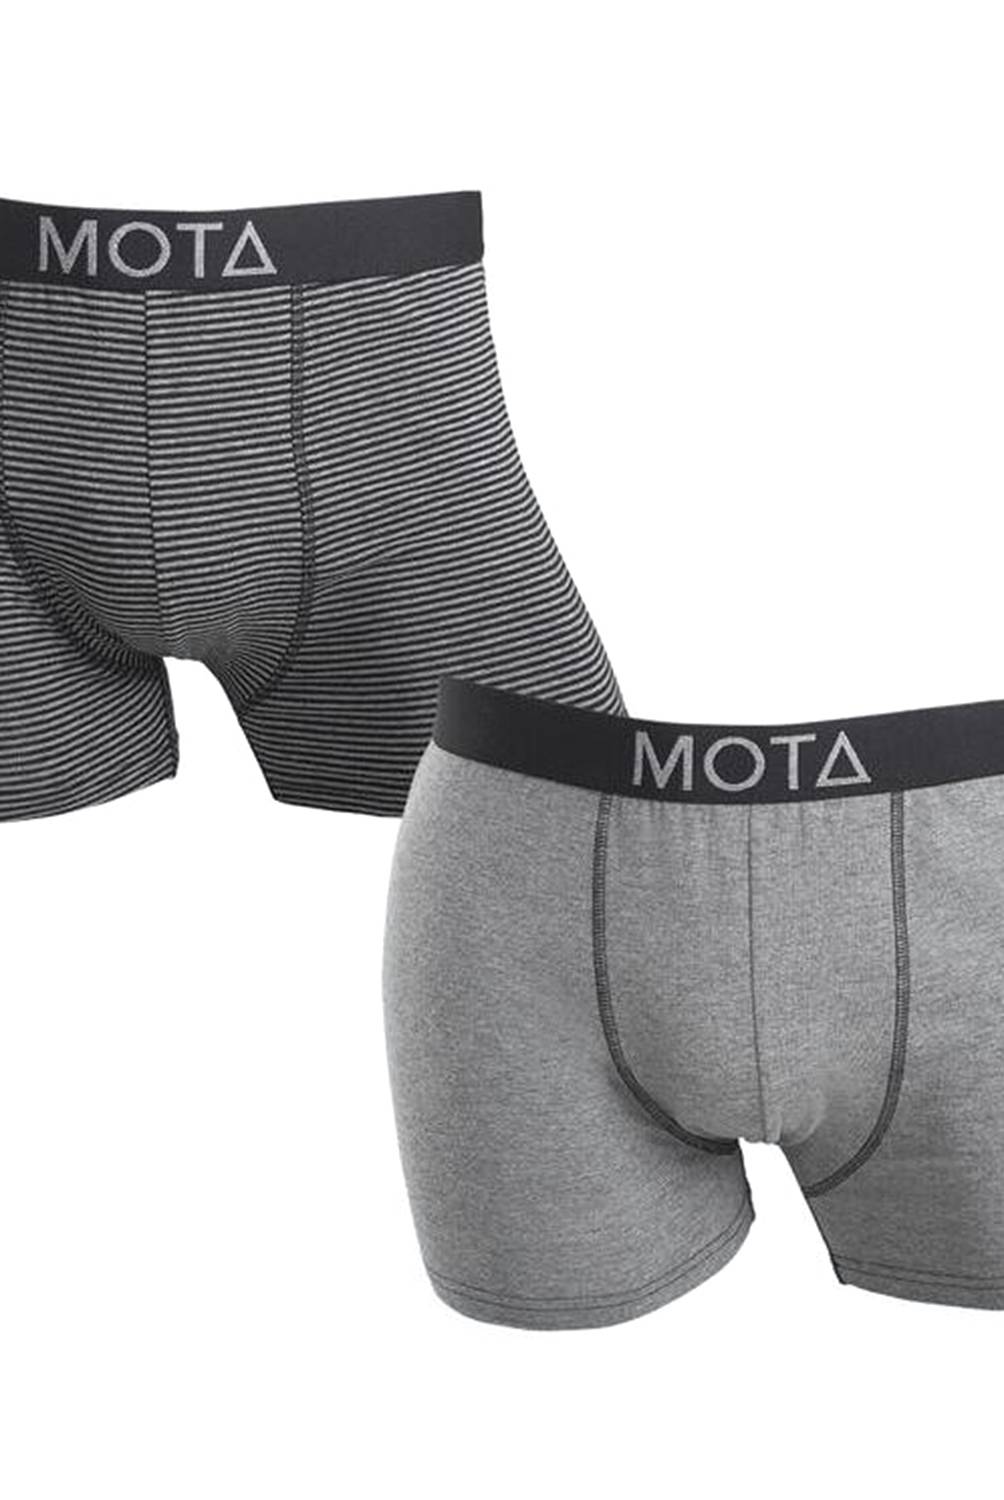 MOTA - Boxer Medio Mota Pack 2